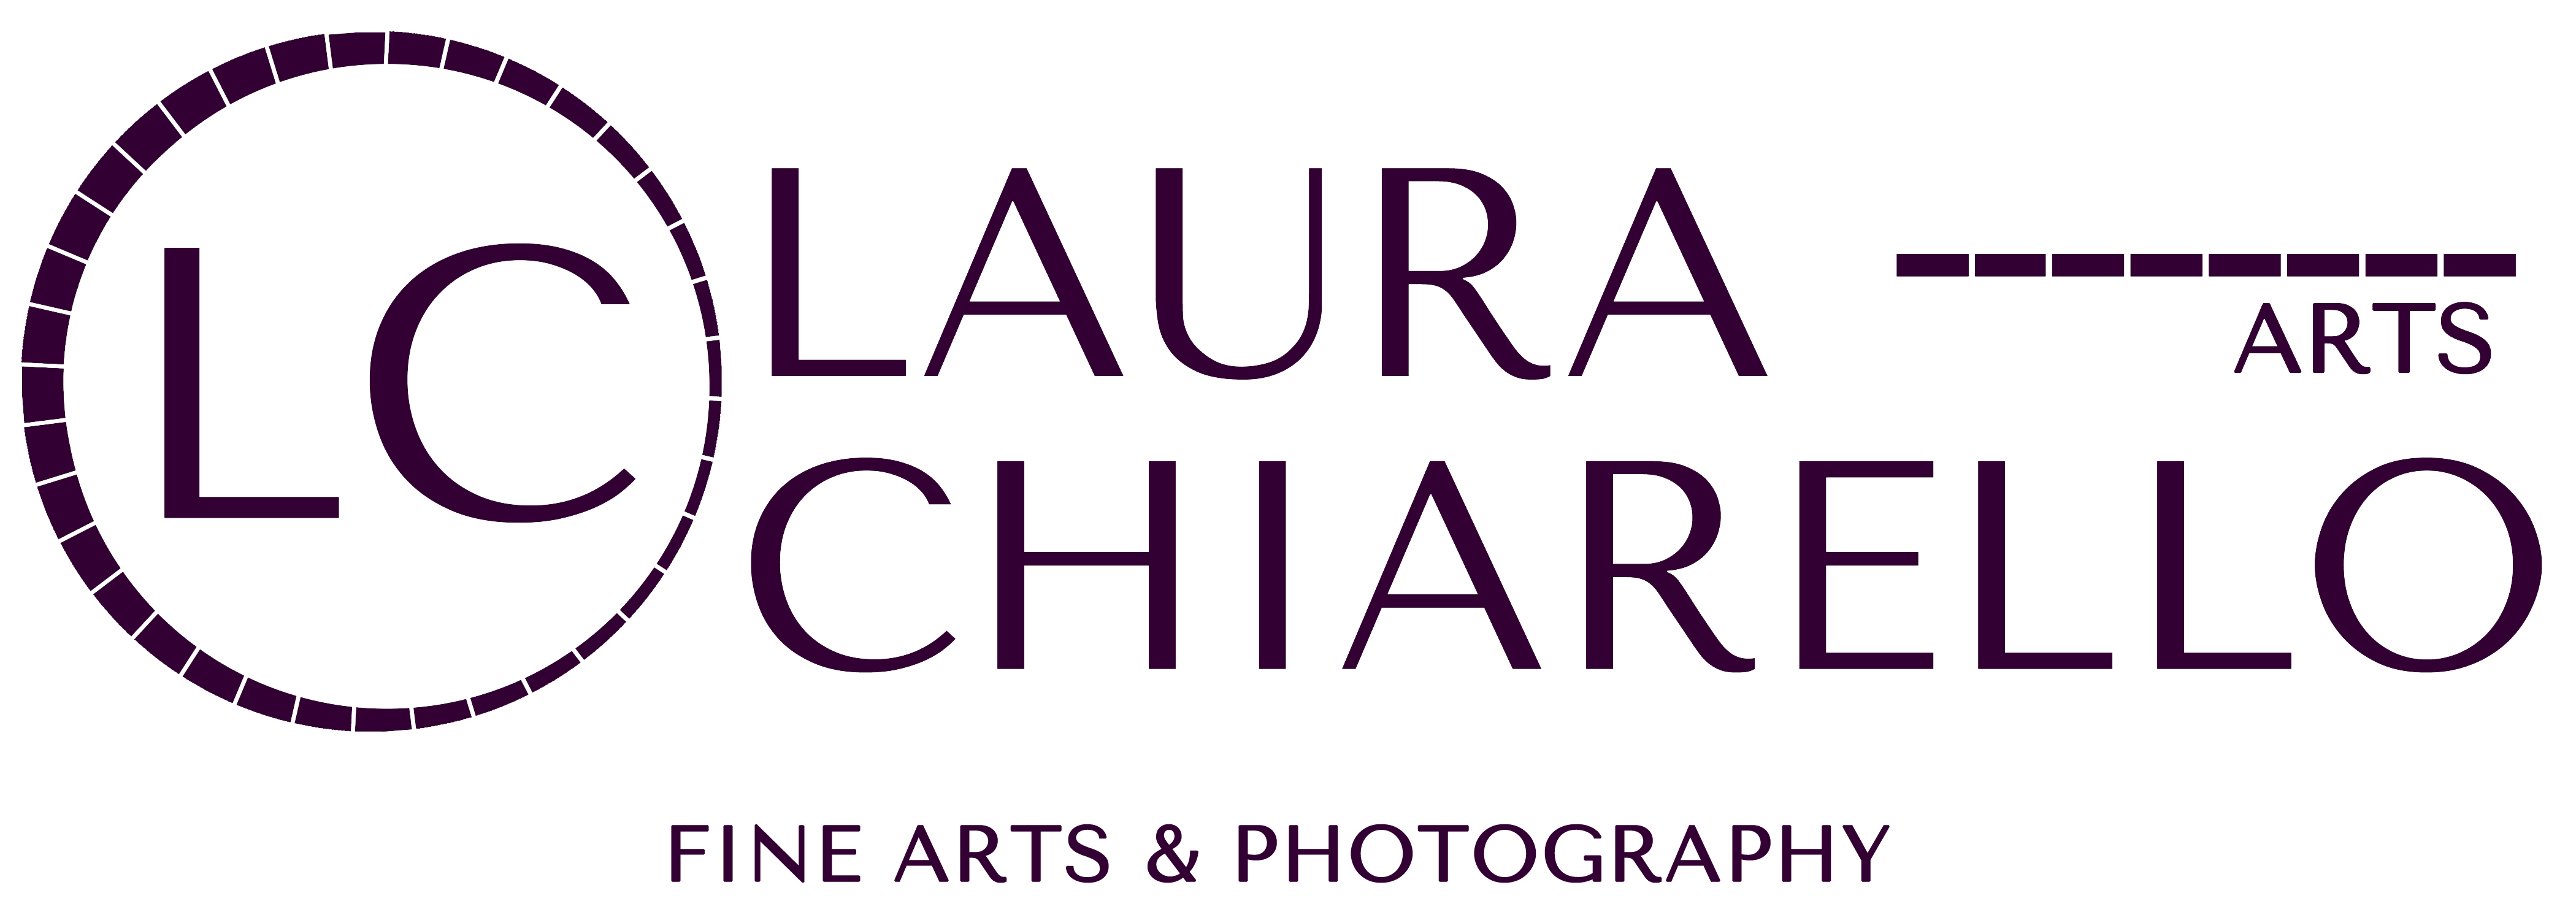 Laura Chiarello Arts - 